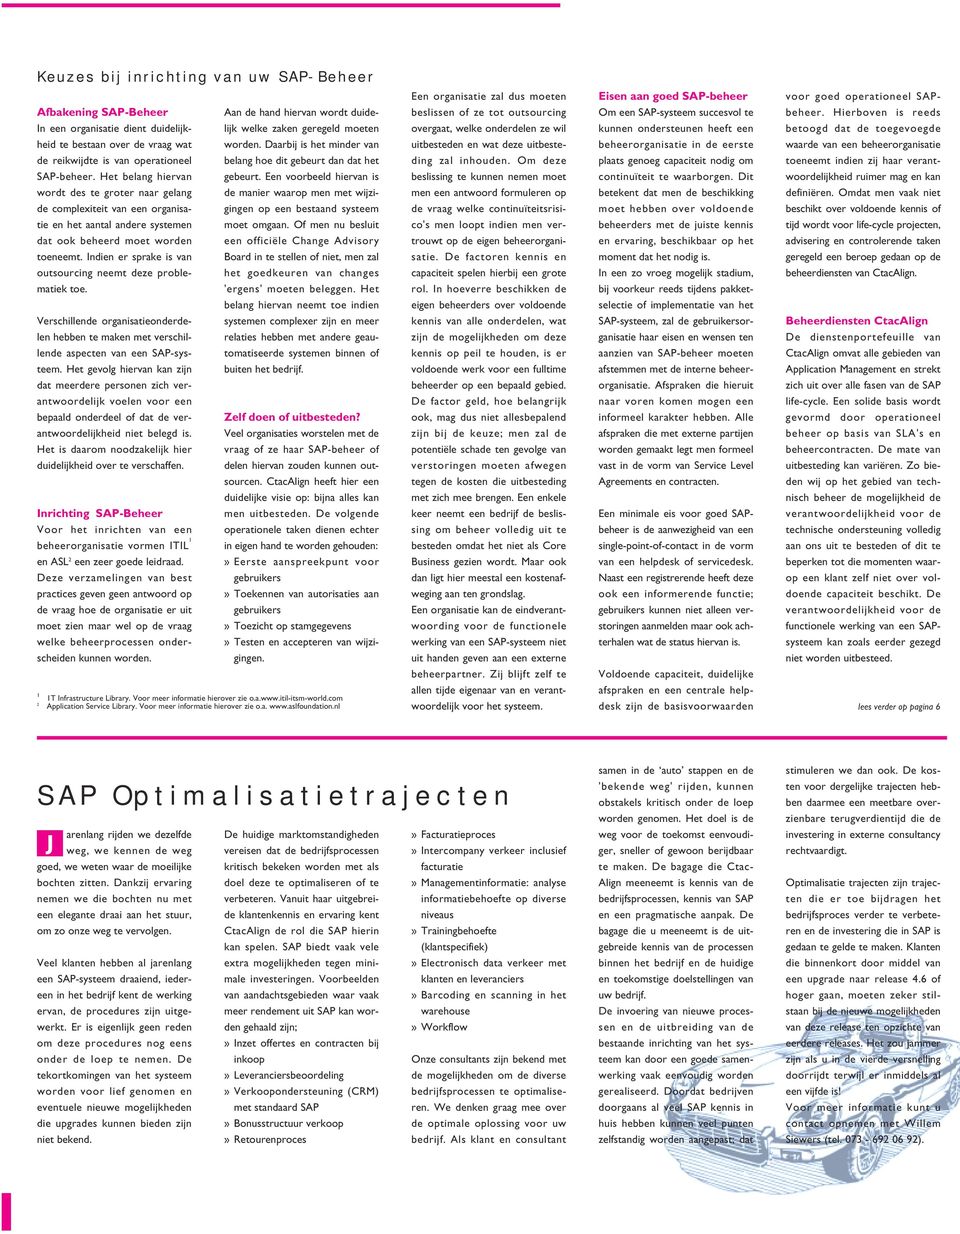 Indien er sprake is van outsourcing neemt deze problematiek toe. Verschillende organisatieonderdelen hebben te maken met verschillende aspecten van een SAP-systeem.